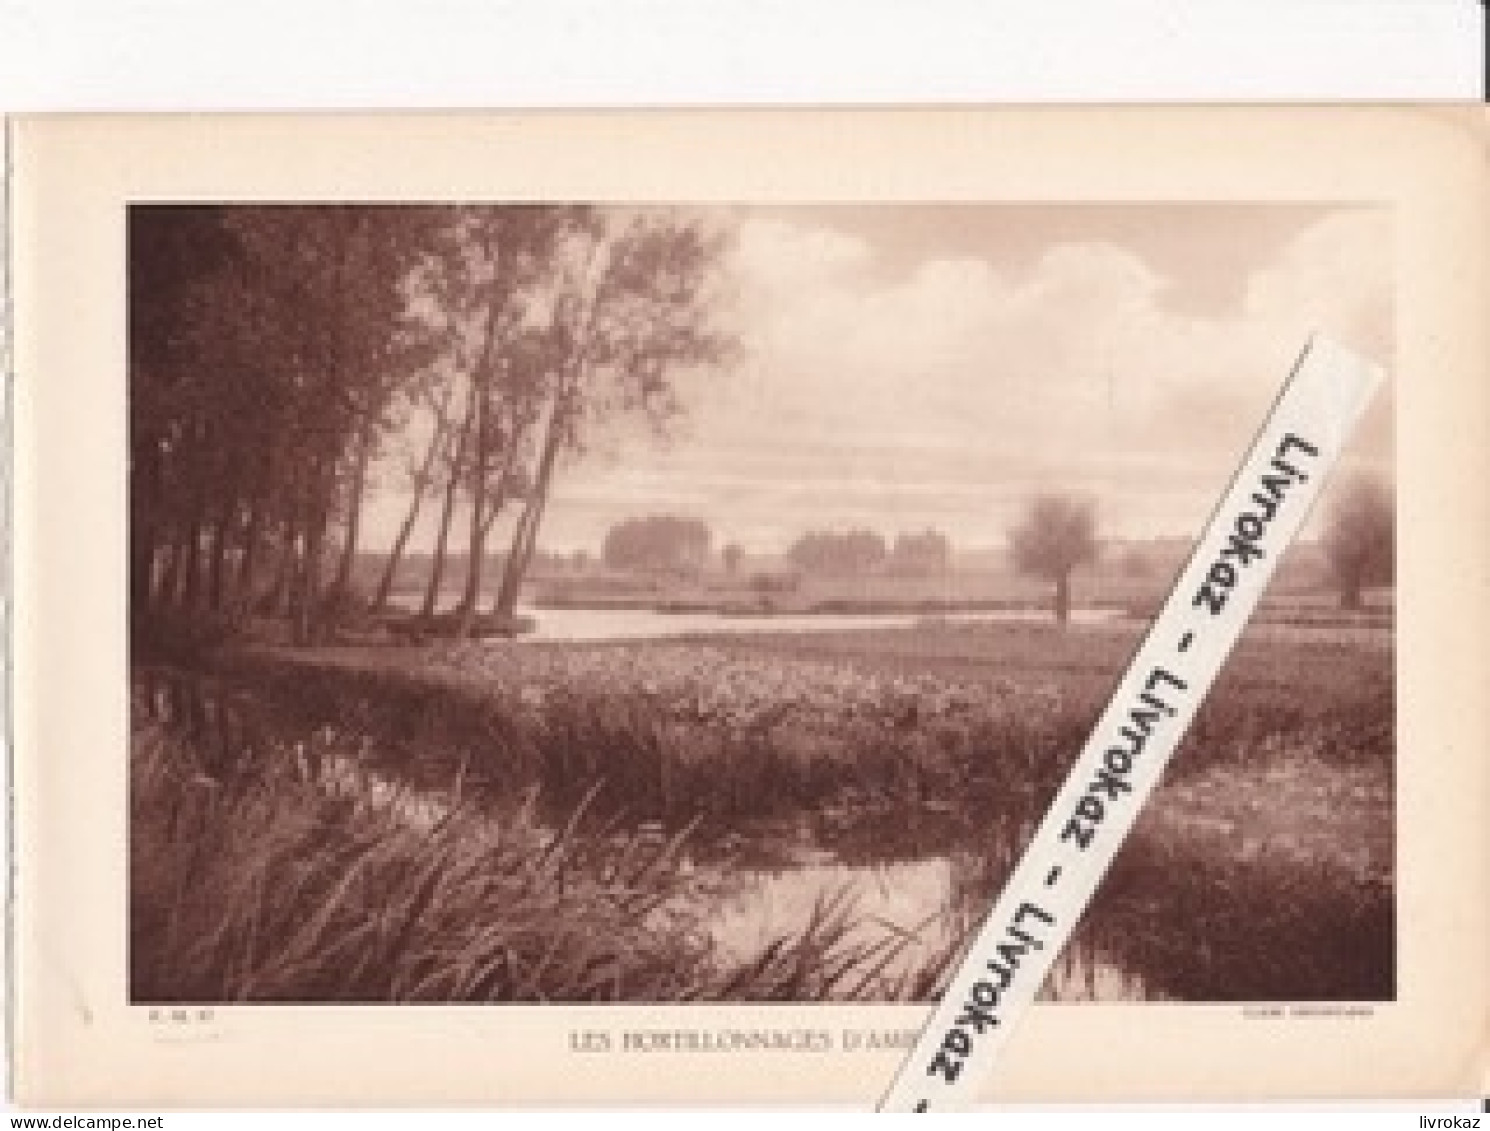 Les Hortillonnages D'Amiens (Somme), Photo Sépia Extraite D'un Livre Paru En 1933 - Non Classés